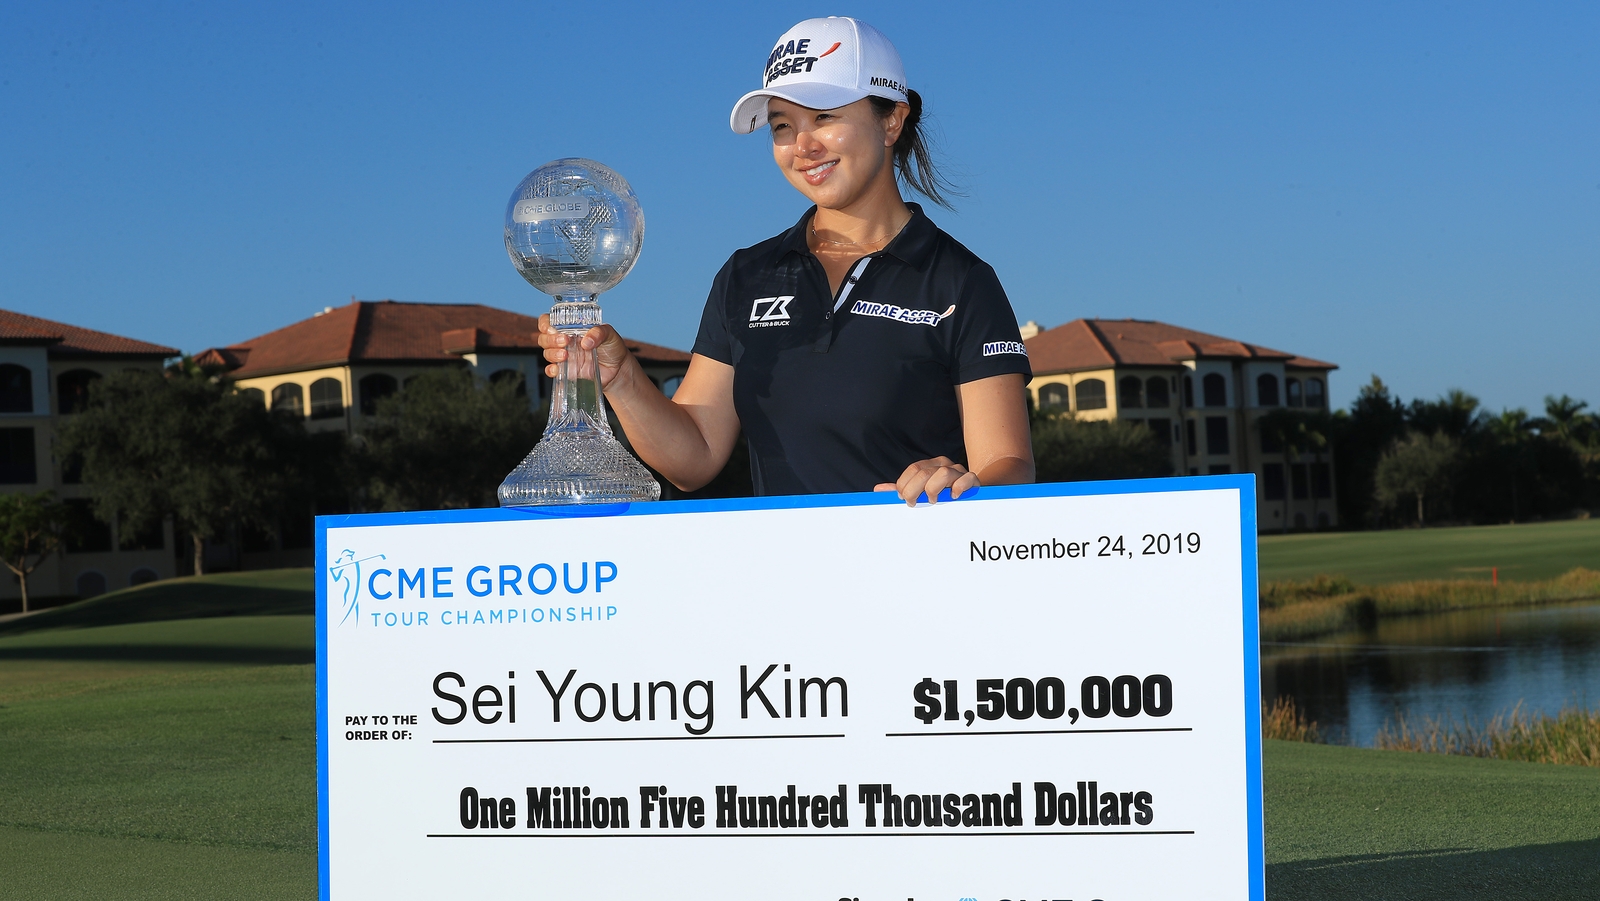 Tỏa sáng trong âm thầm, Kim Sei Young vượt nhiều đối thủ lớn để lên ngôi vô địch CME Group Tour Championship 2019